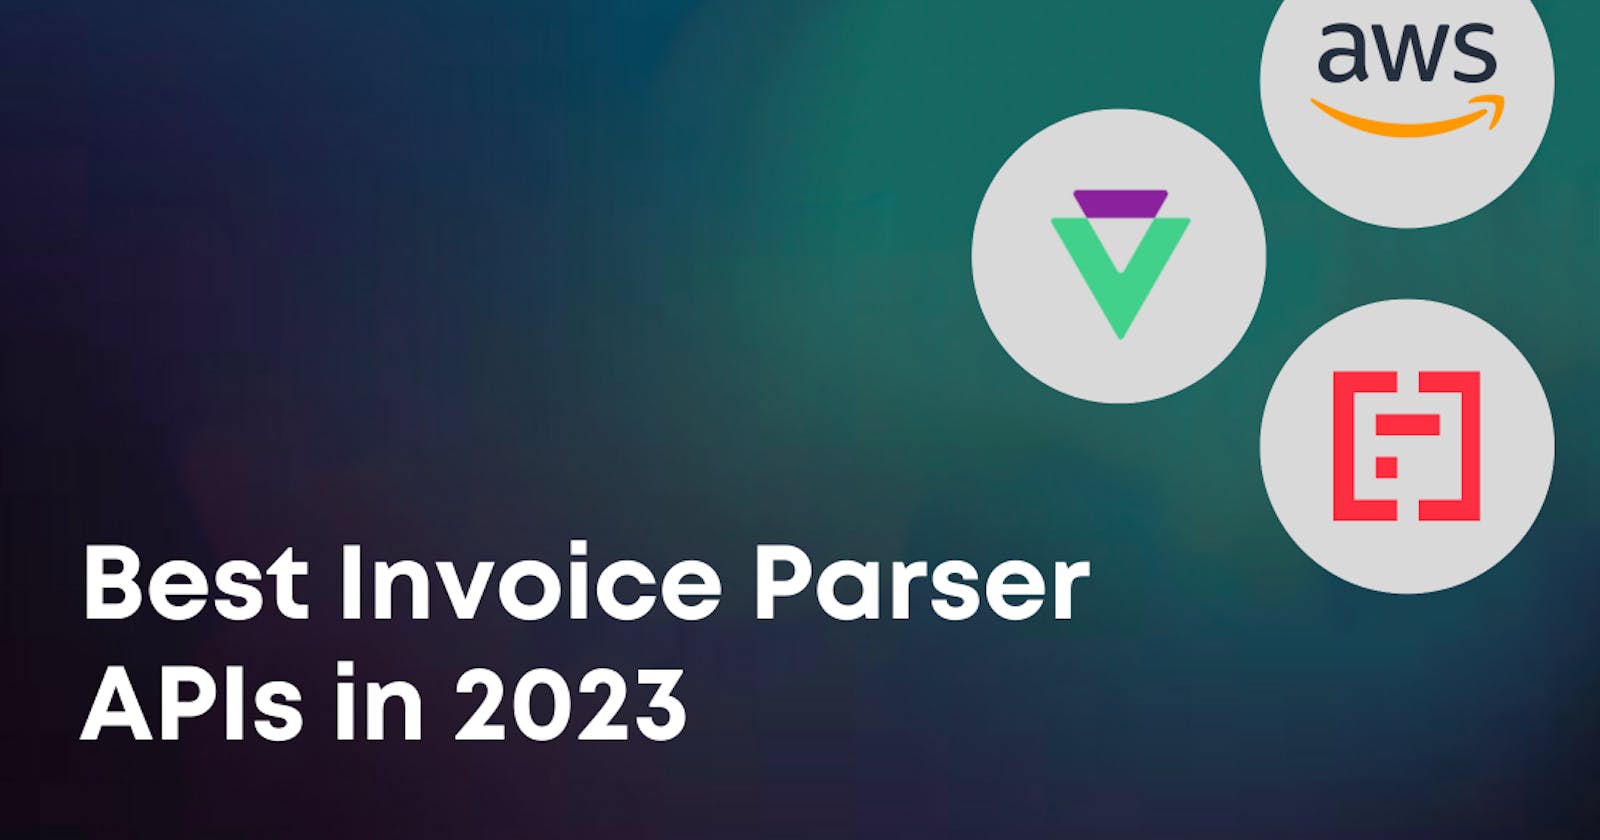 Best Invoice Parser APIs in 2023